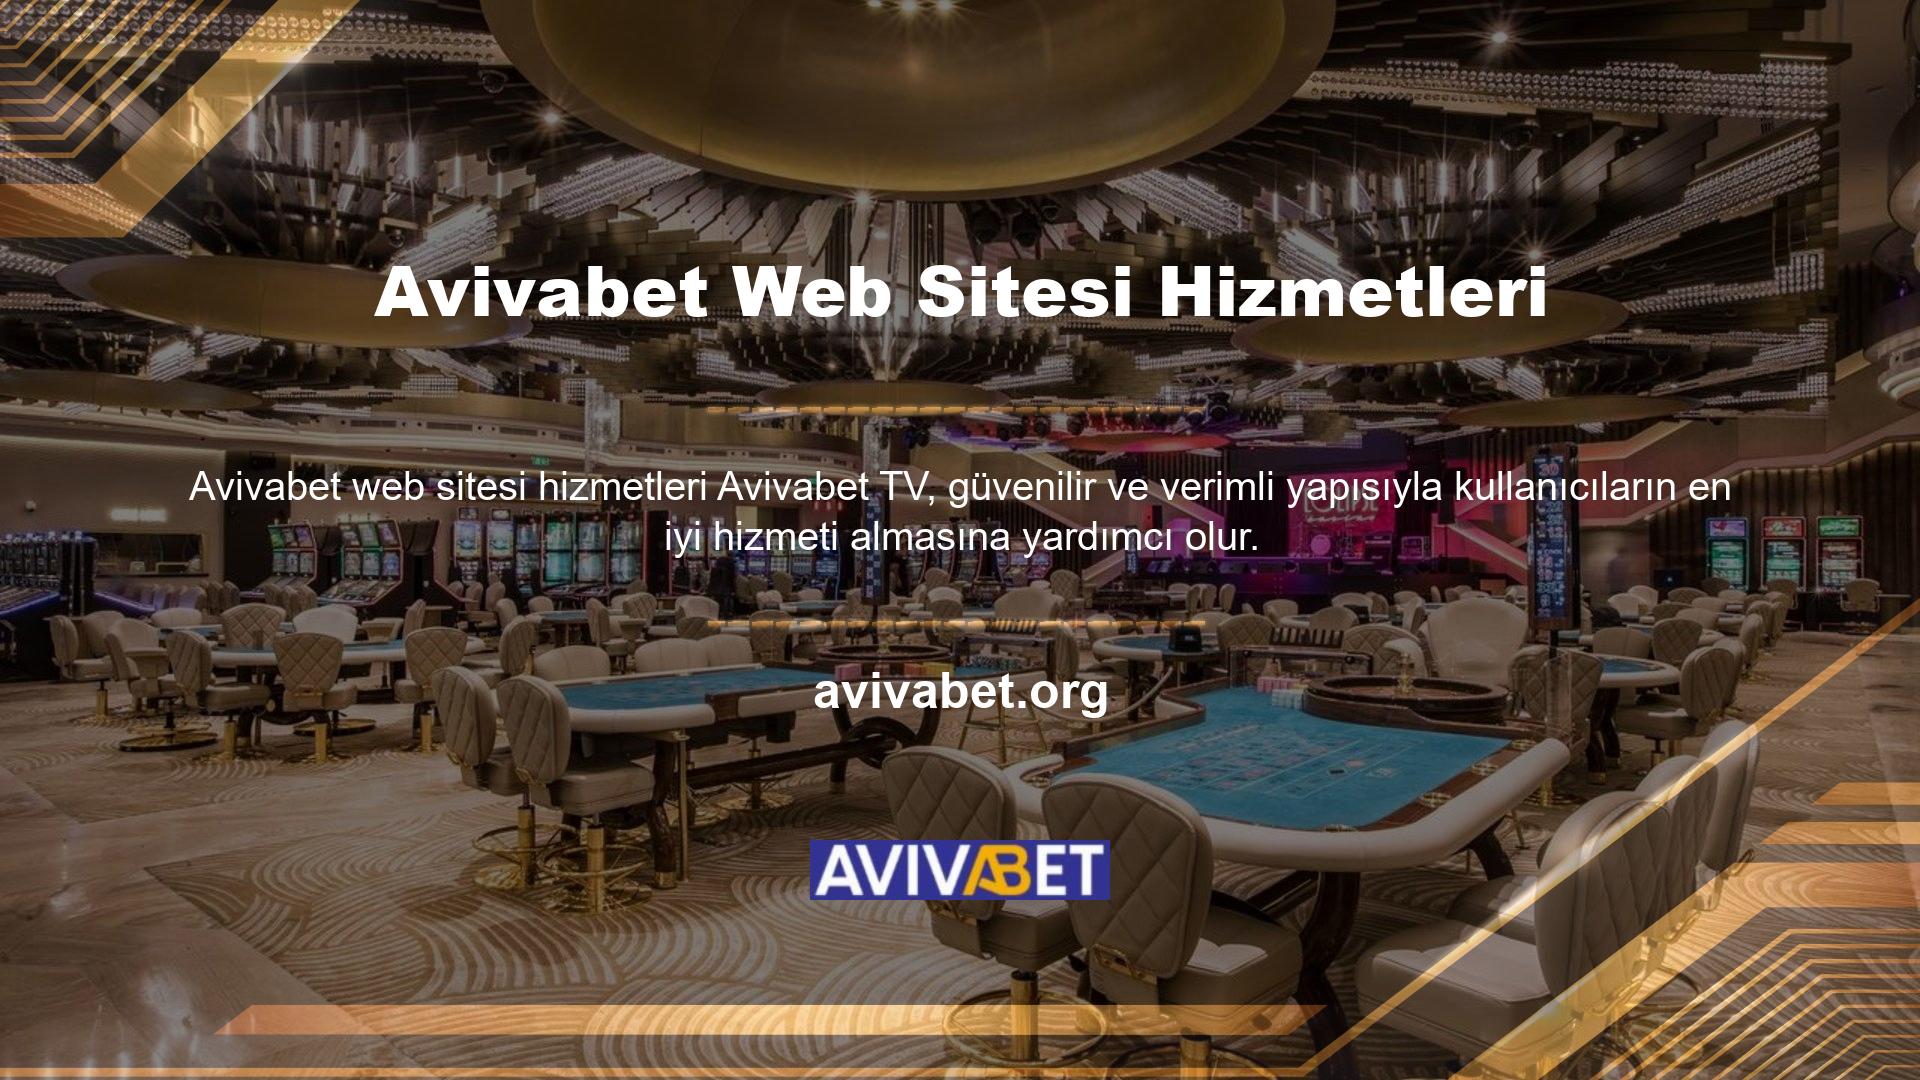 Avivabet, hizmetin canlı oyunları, takım oyunları ve yayınları için kullanıcılardan ücret almaz